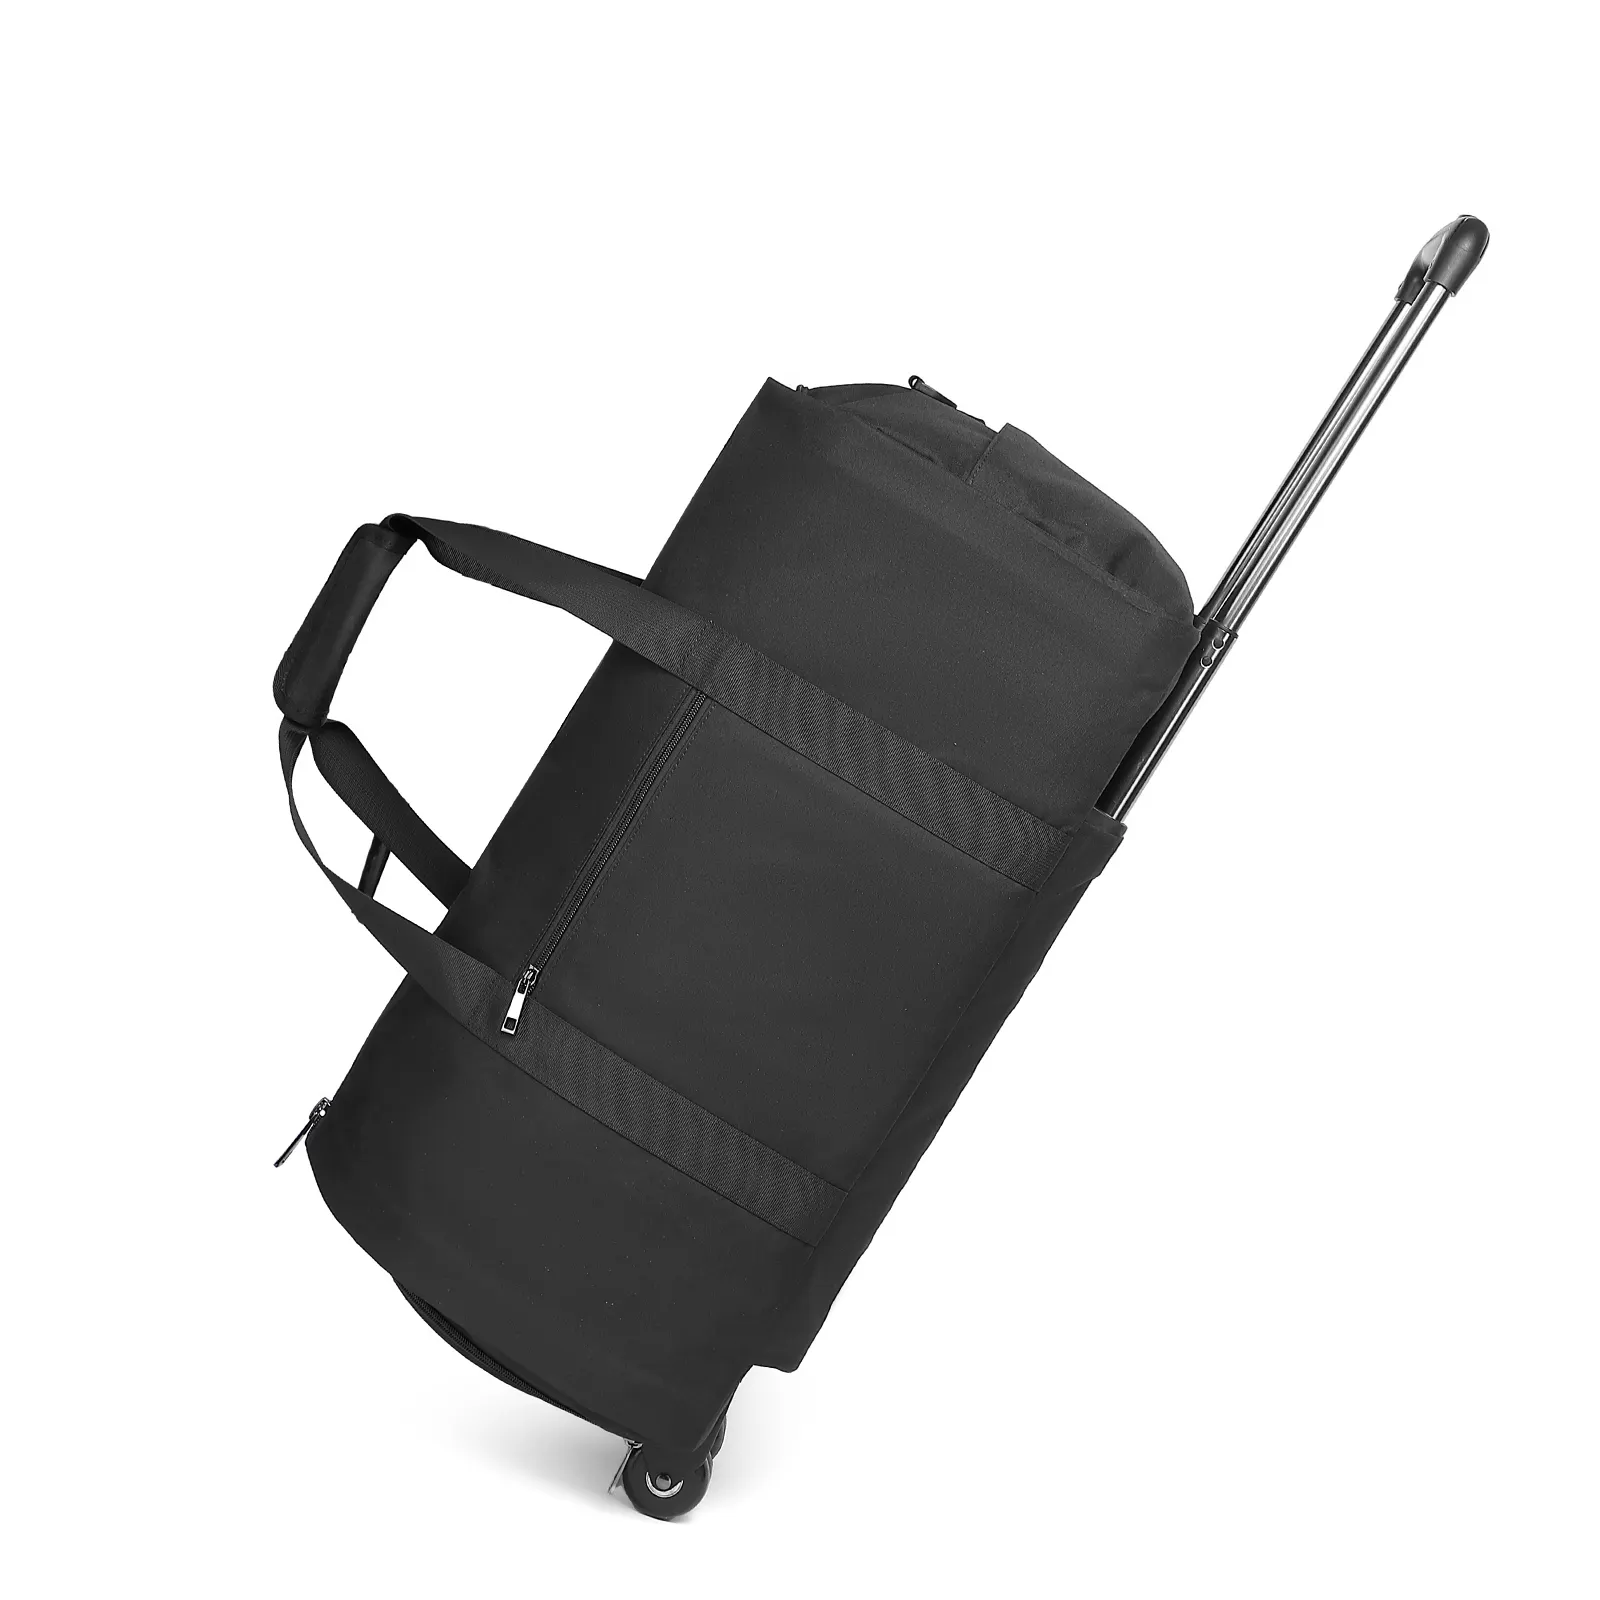 OEM đen Polyester Duffel túi phù hợp với túi du lịch du lịch chuyển đổi thực hiện trên túi may mặc với bánh xe